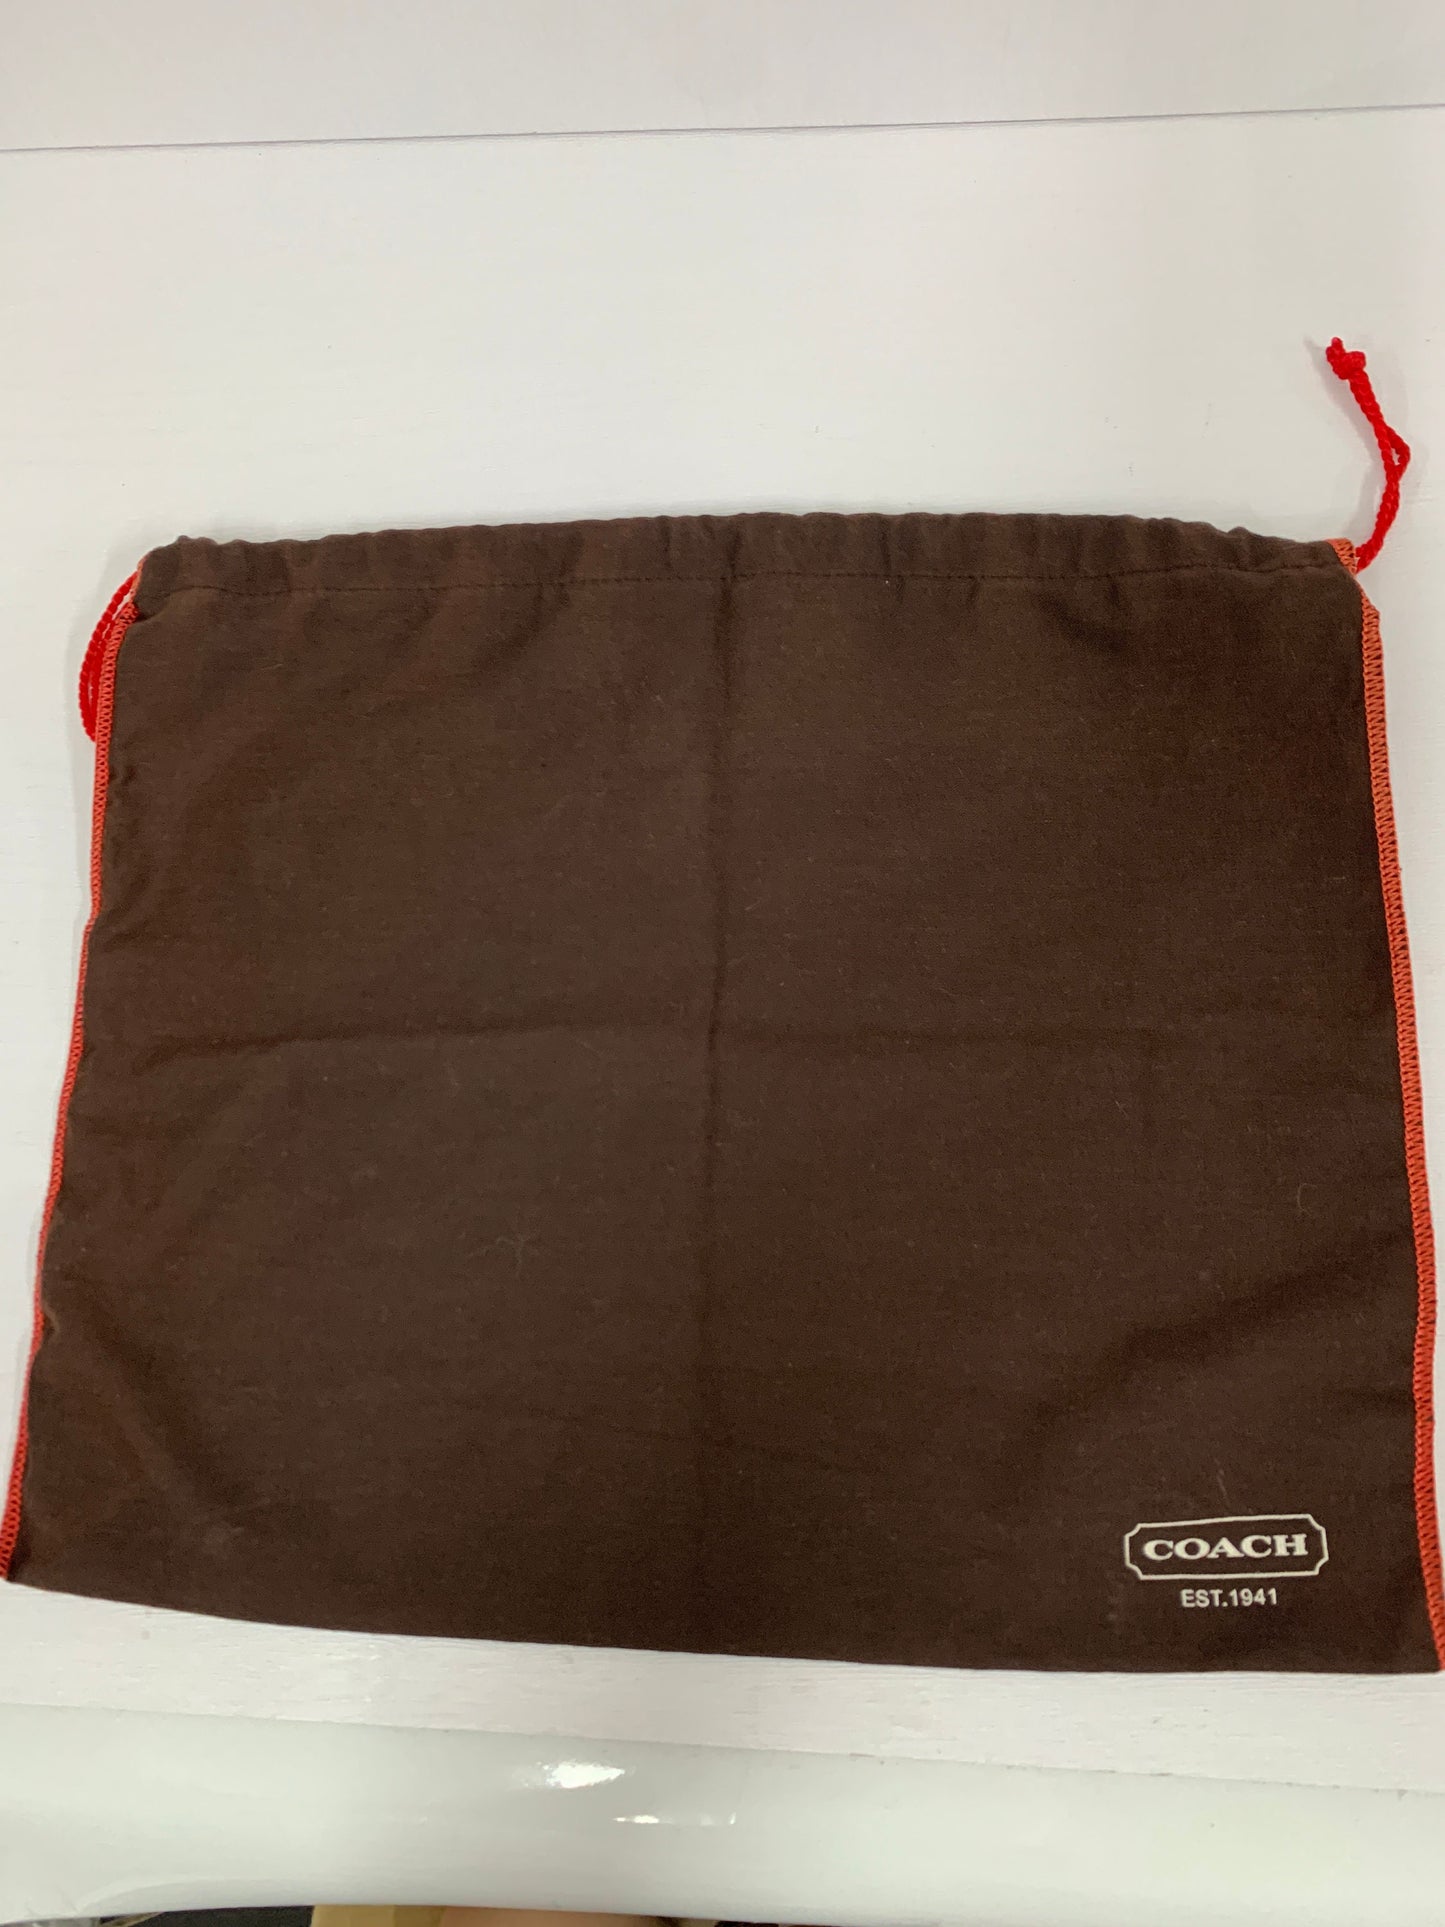 Coach dust bag for shoulder handbag wallet belt tote boot gift bag